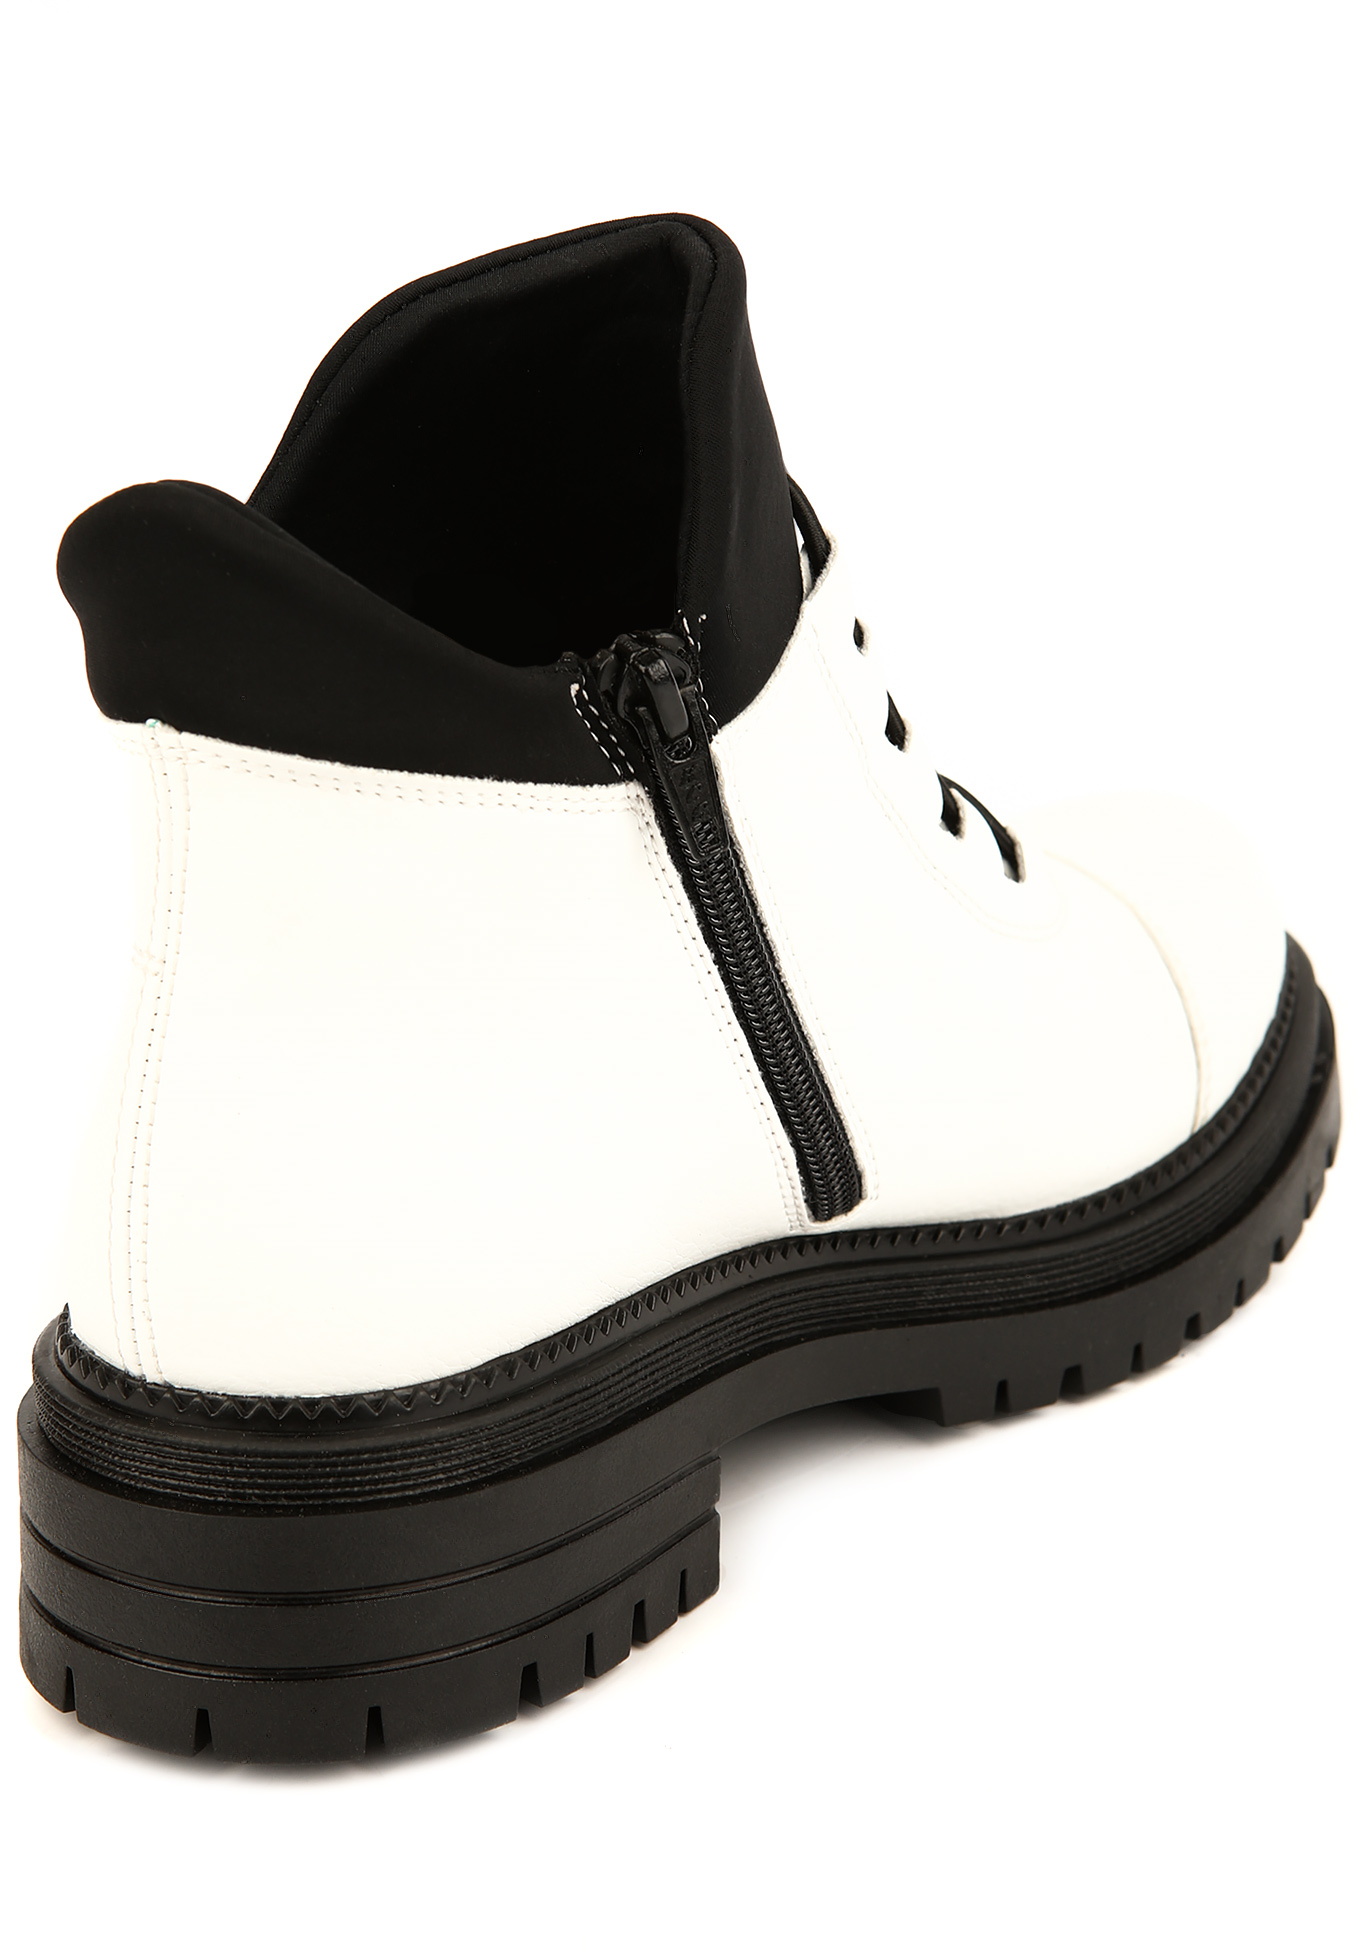 Ботинки женские "Виолла" Rieker, размер 38, цвет черный - фото 4